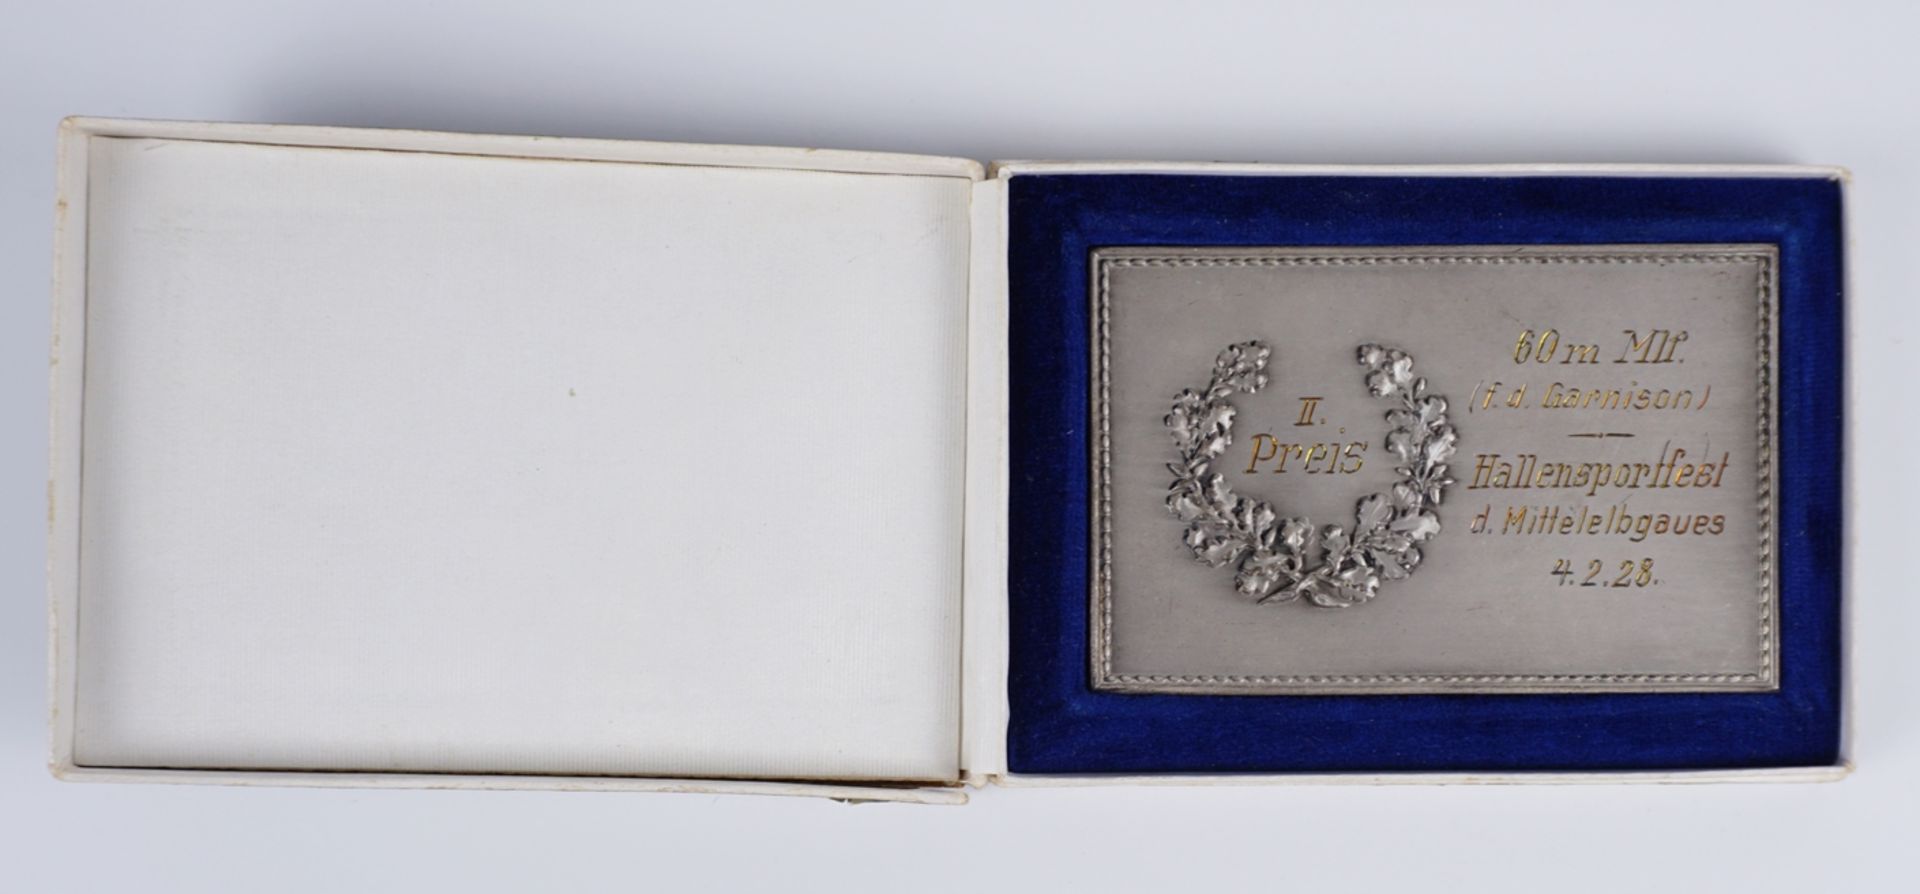 Medaille, II.Preis, 60m Mlf. (f.d.Garnison), Hallensportfest des Mittelelbgaues, 4.2.(1928) - Bild 2 aus 3